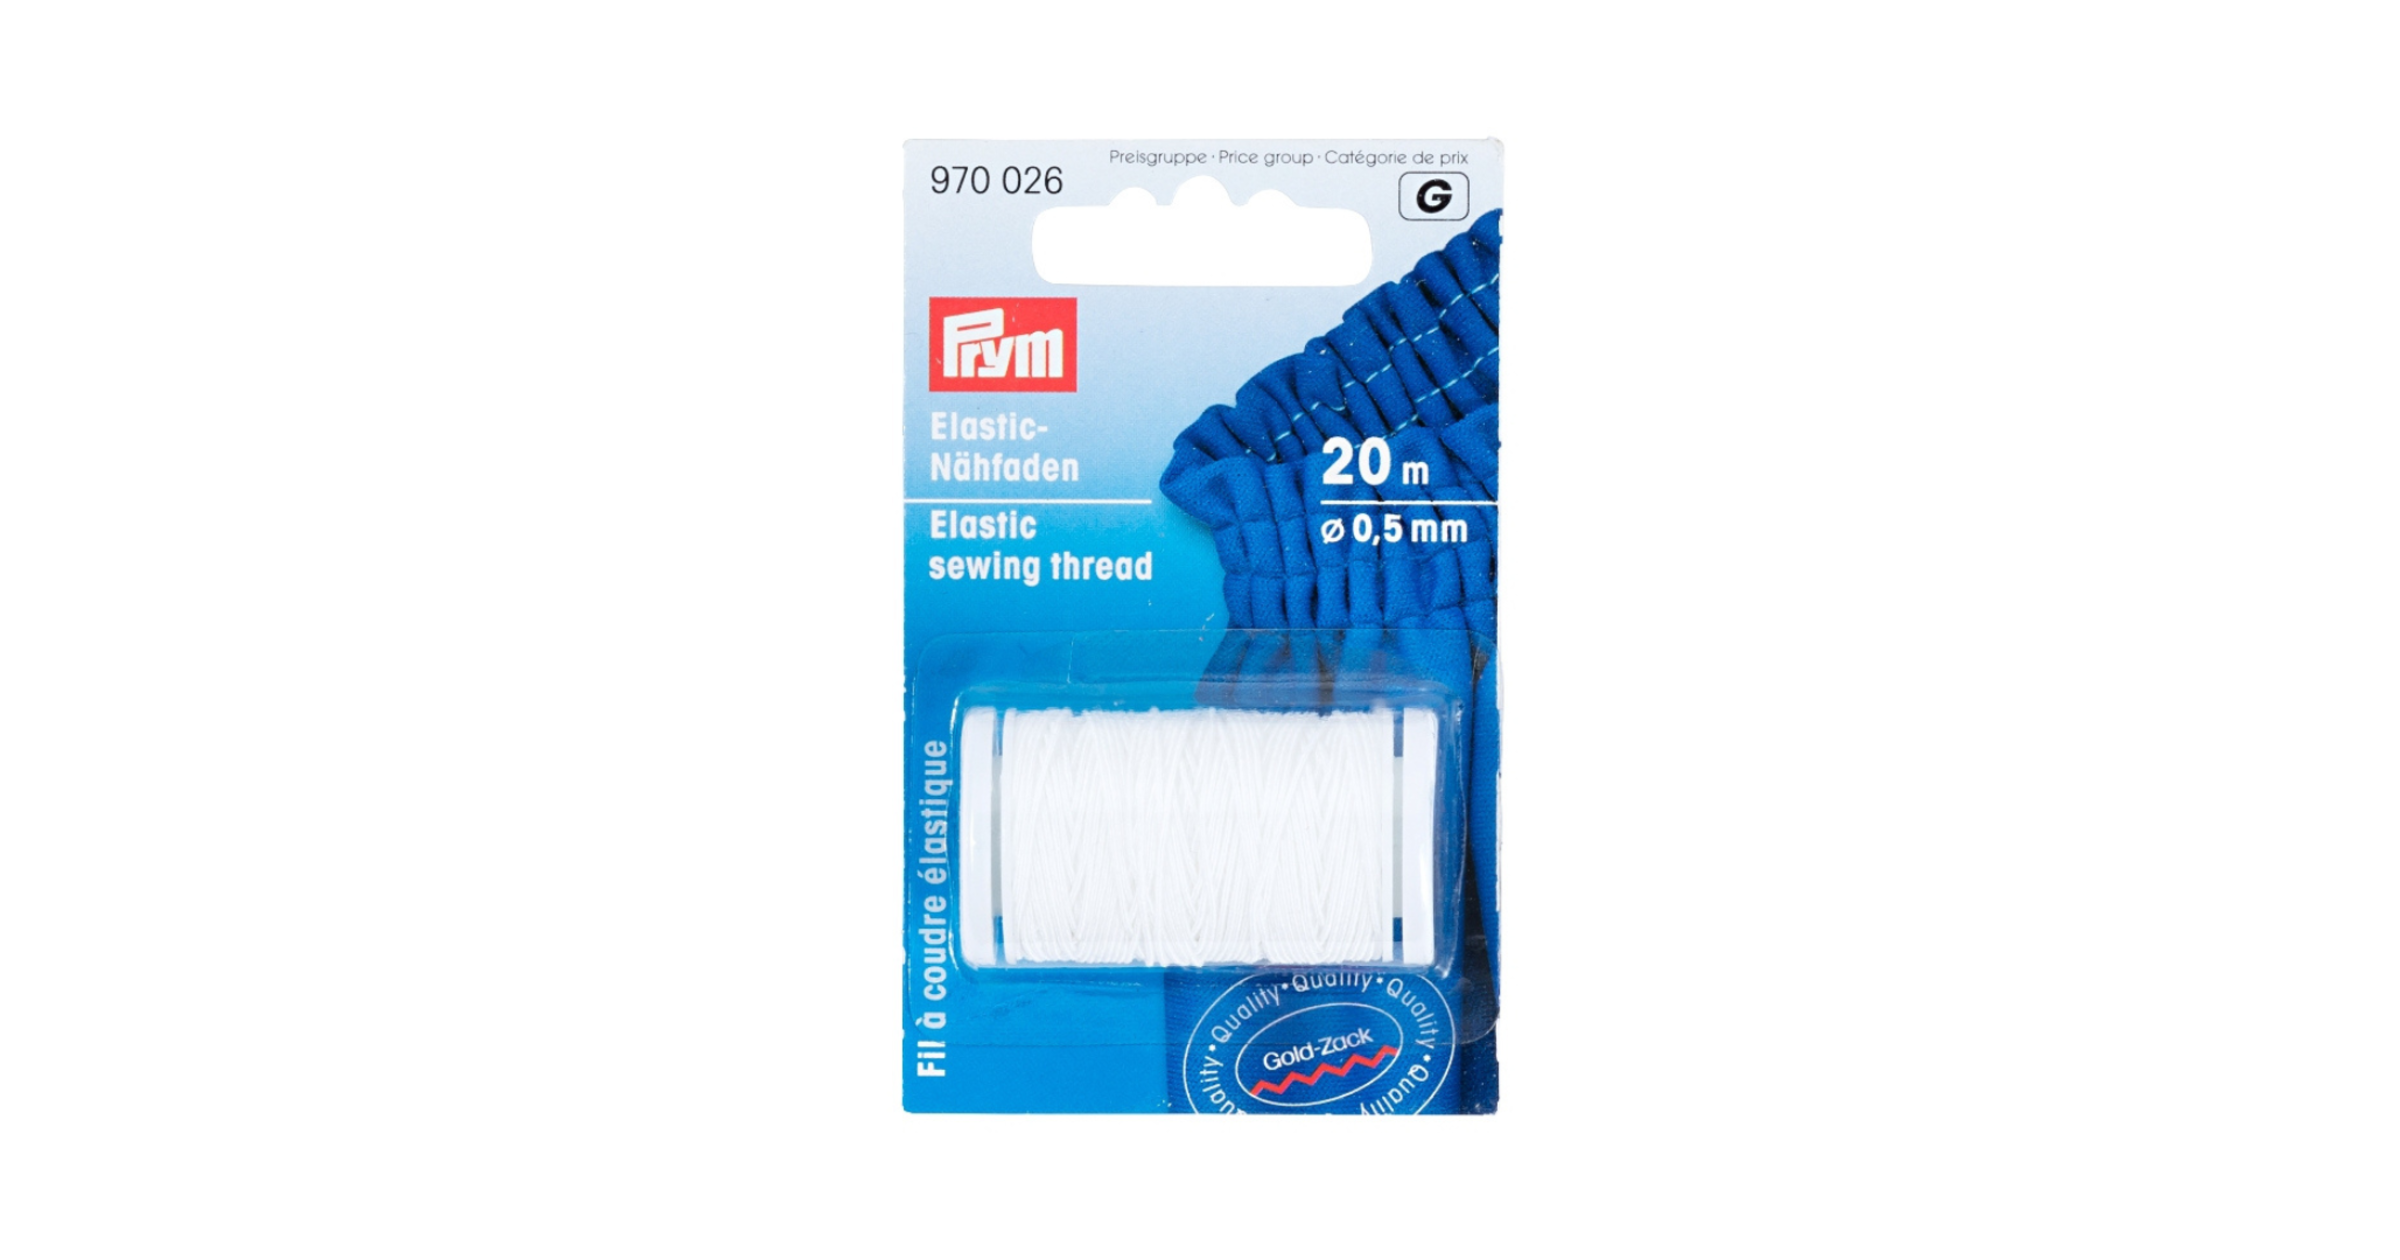 Prym - White Elastic Sewing Thread 20m - 970026